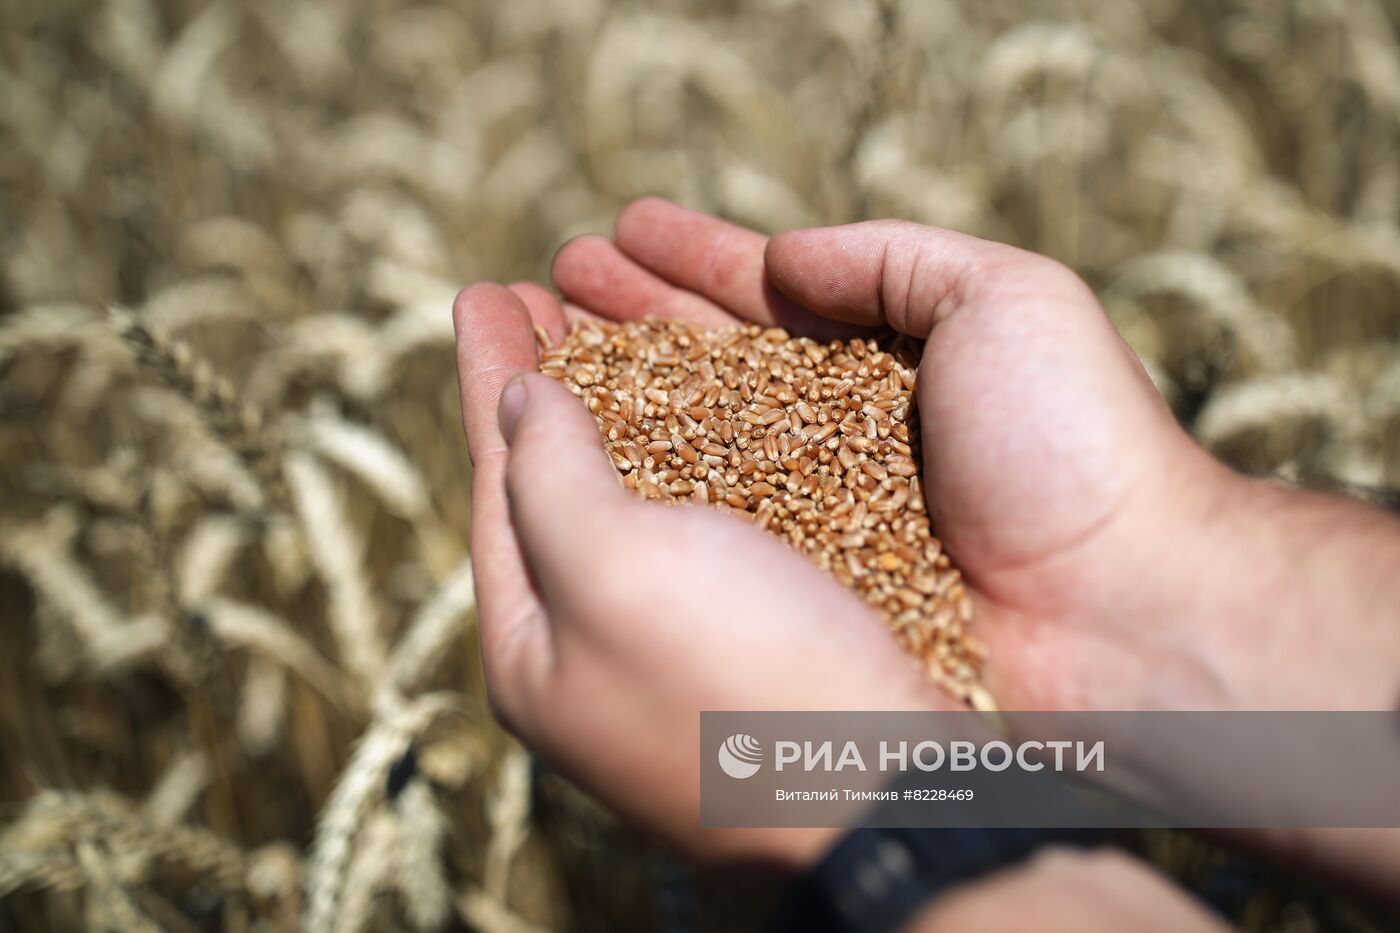 Уборка урожая пшеницы на юге России